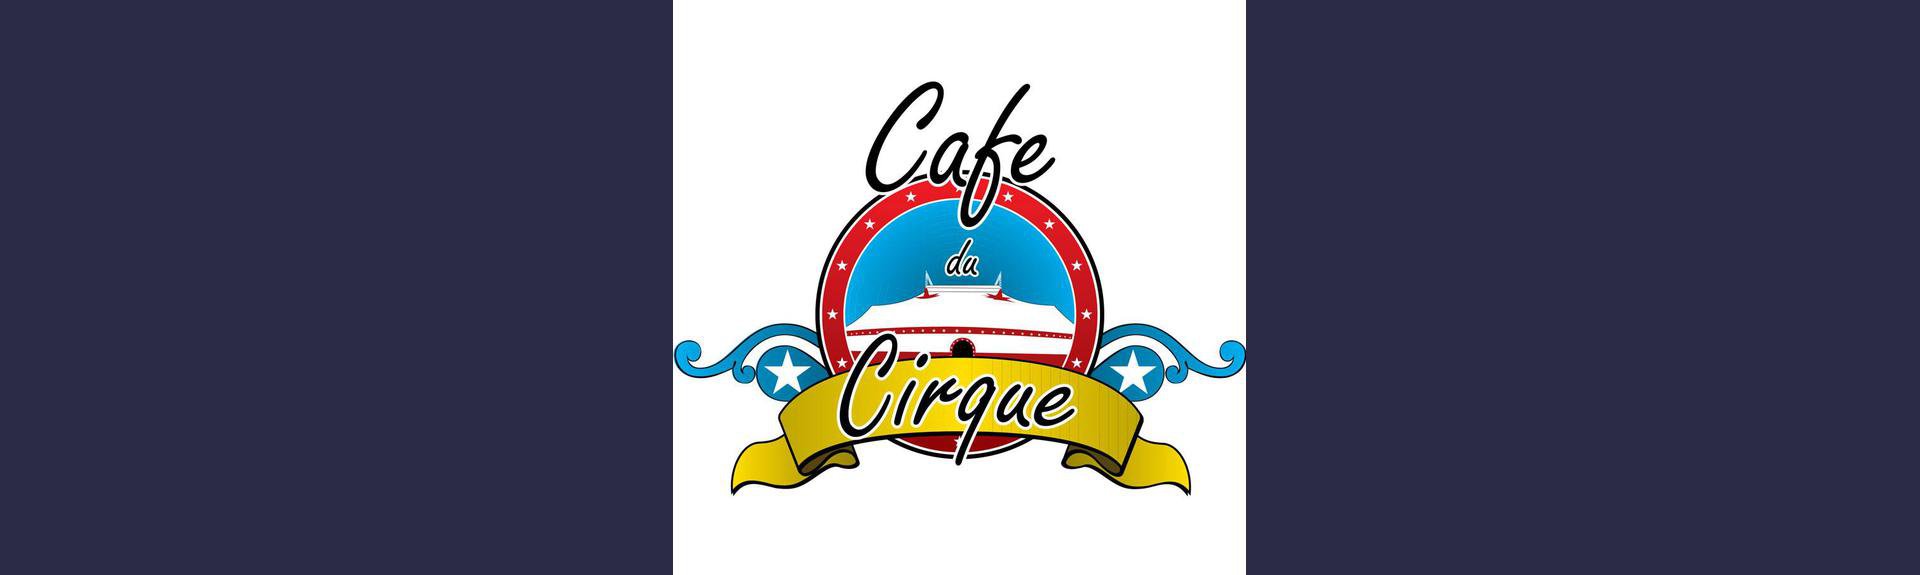 Cafe du Cirque child-friendly restaurant | Daleside| Meyerton| With Kids